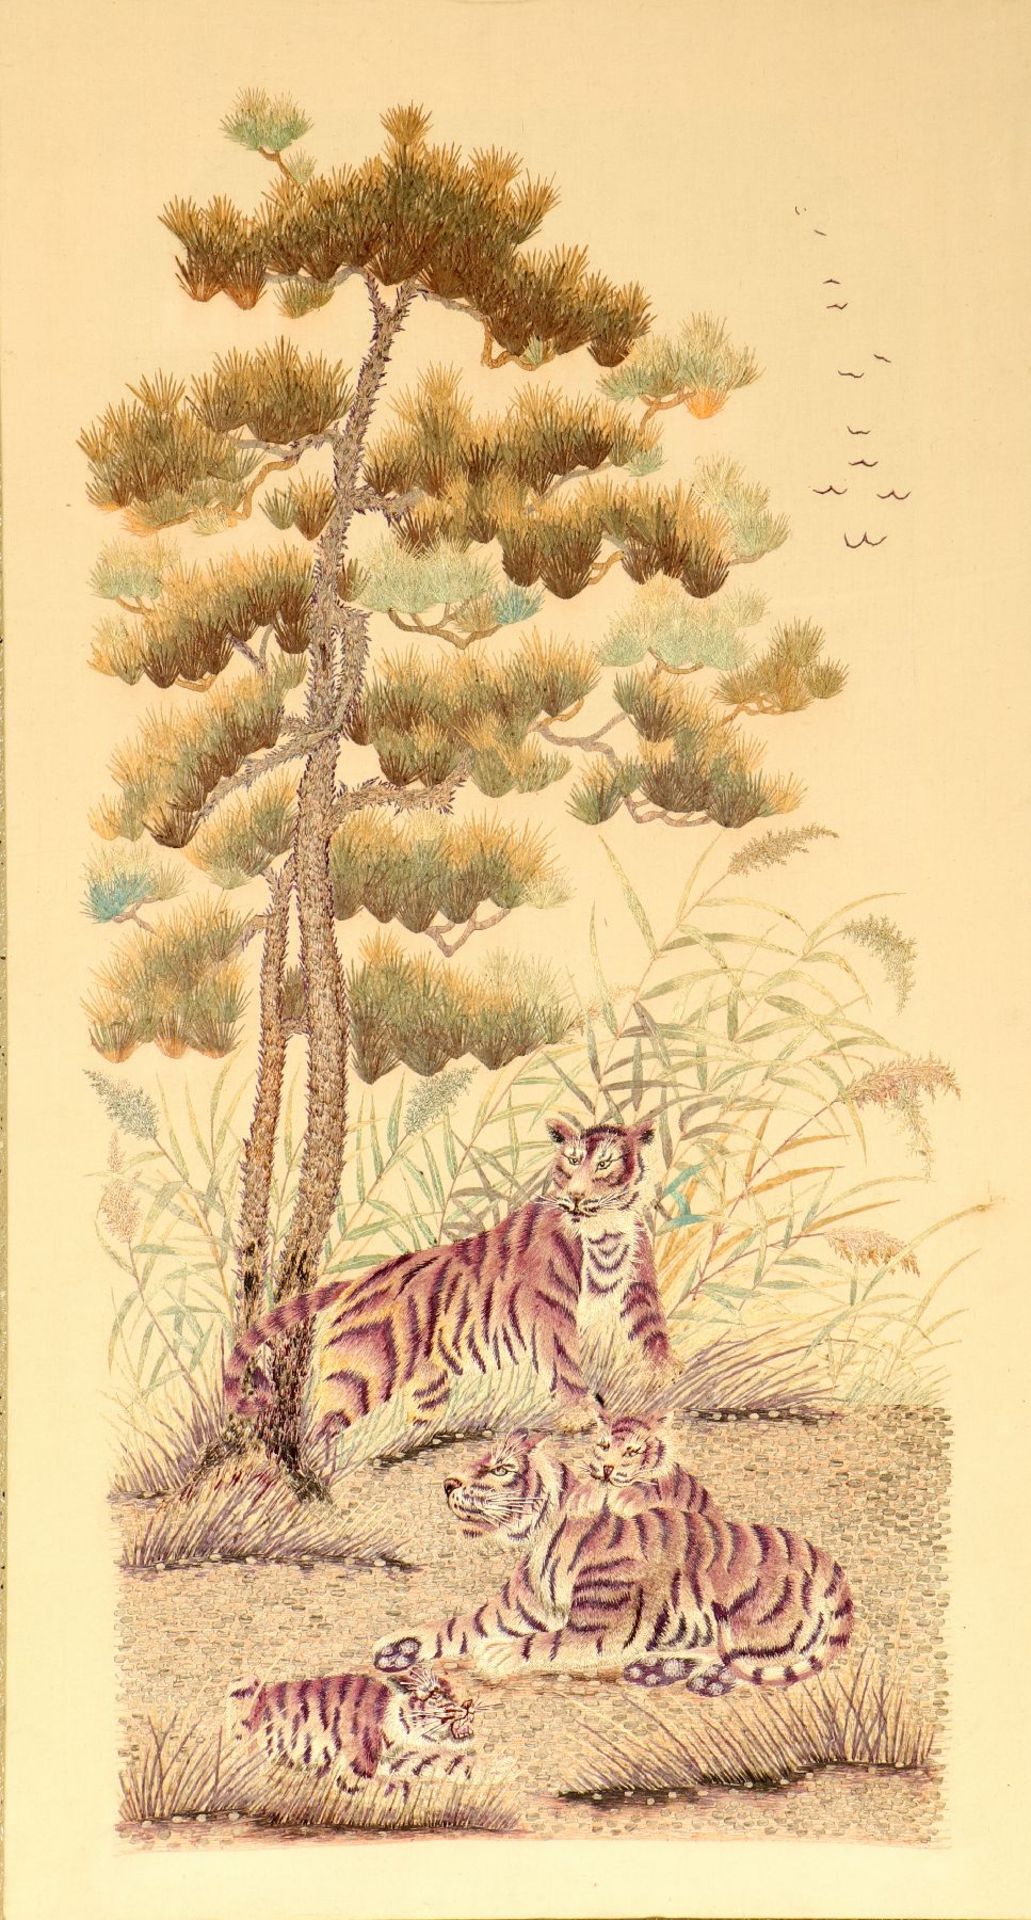 Sehr feine "Seidenstickerei" antik (Tigerfamilie), Japan, Ende 19.Jhd., reine Naturseide.